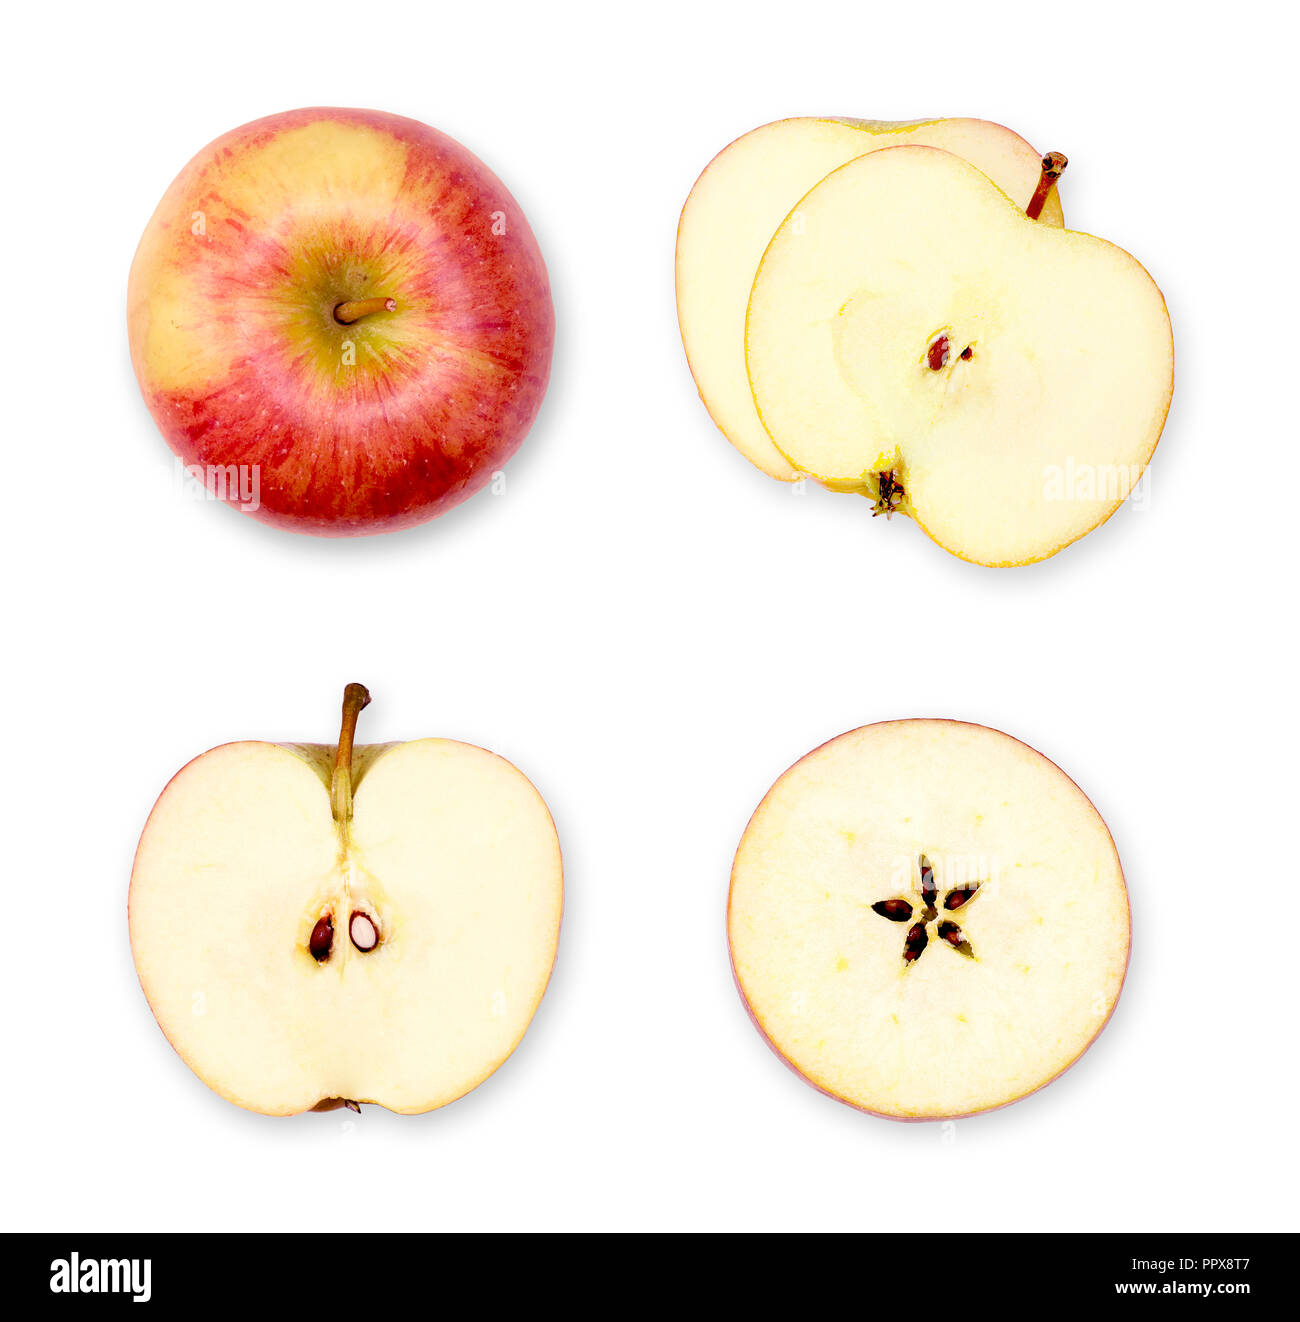 Apple Zusammensetzung oder Anordnung der ganzen und geschnittenen Äpfeln. Ansicht von oben, Querschnitt der rote Äpfel. Satz von frisch geschnittenen Äpfeln auf Weiß. Stockfoto